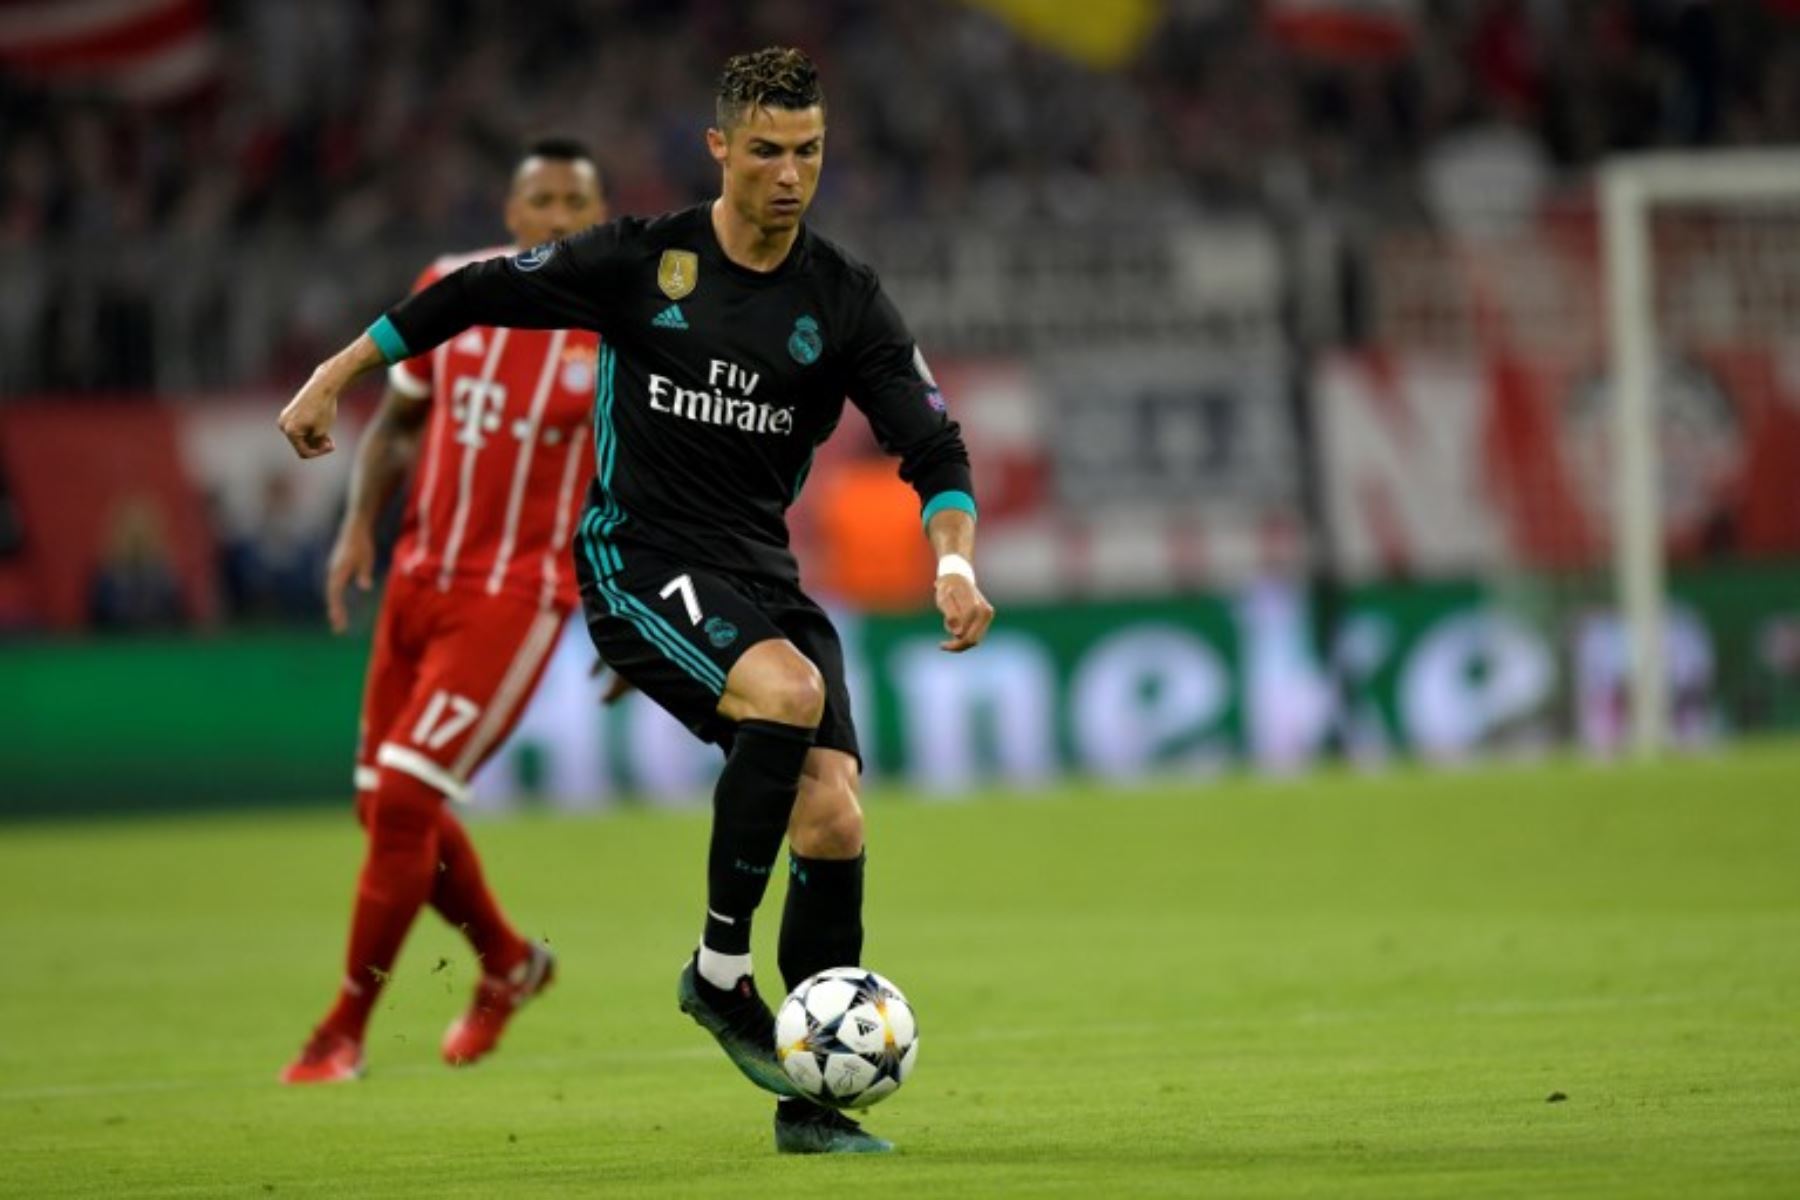 Cristiano Ronaldo, corre con la pelota durante el partido de ida de la semifinal de la UEFA Champions League FC Bayern Munich - Real Madrid CF en Múnich.Foto:AFP